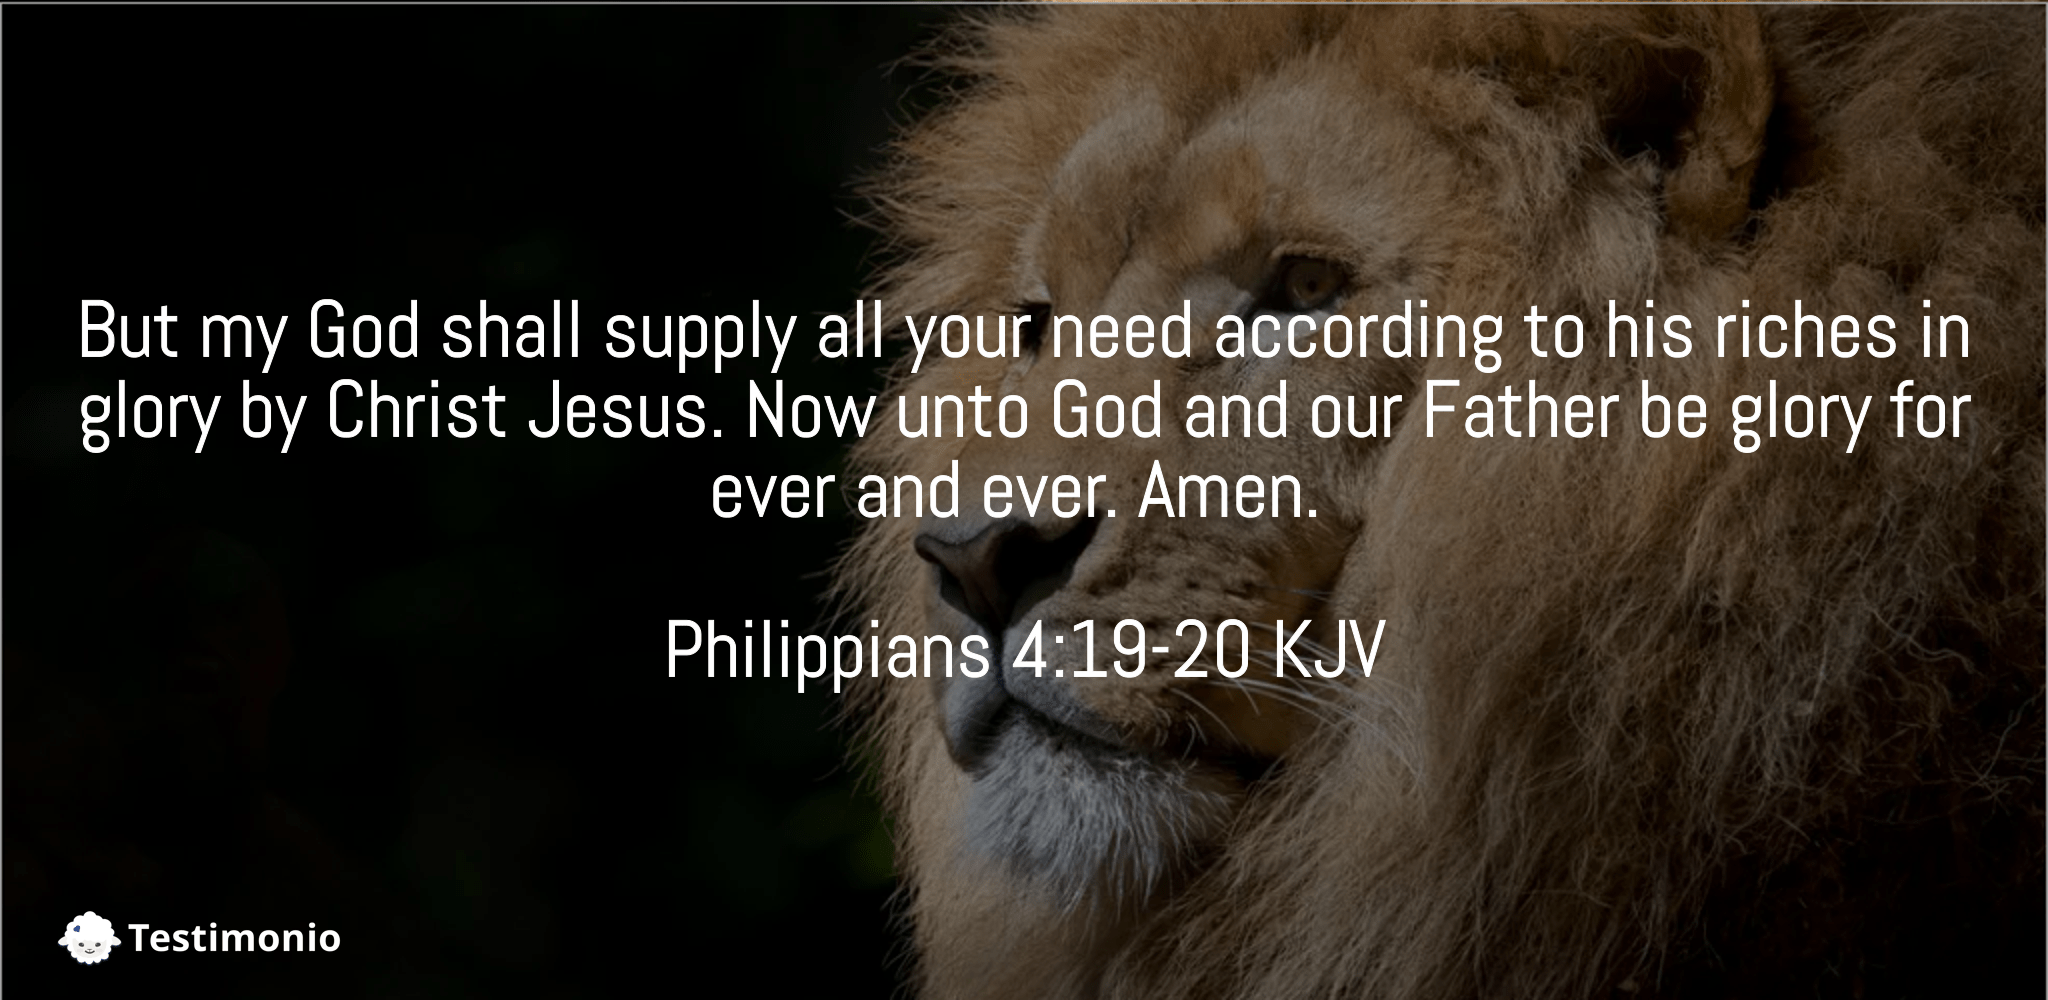 Philippians 4:19-20